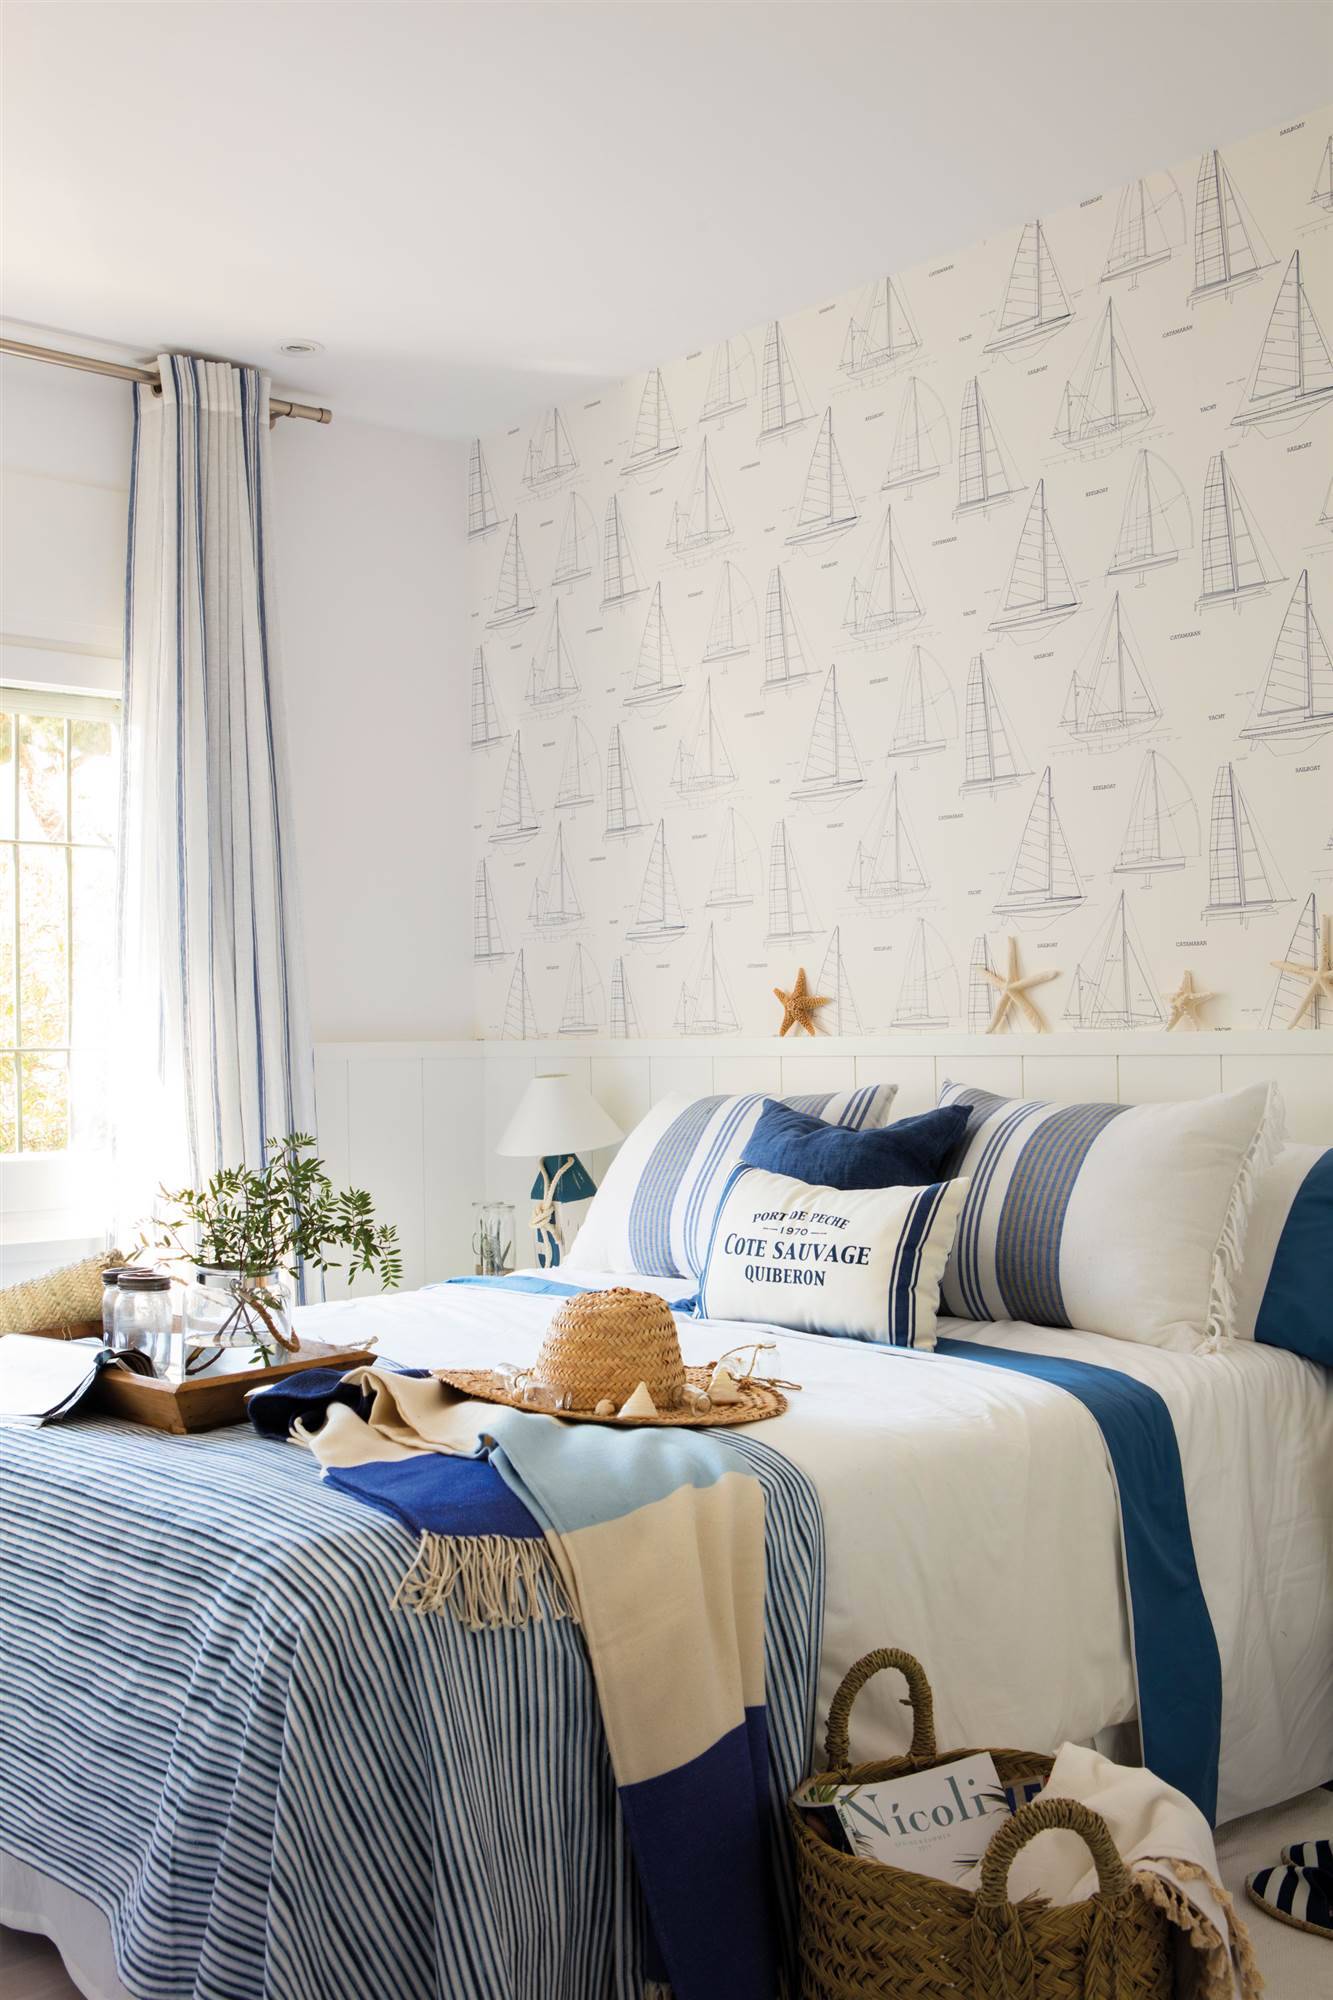 Dormitorio de estilo náutico decorado en blanco y azul 00460587 df2cfc20 1333x2000